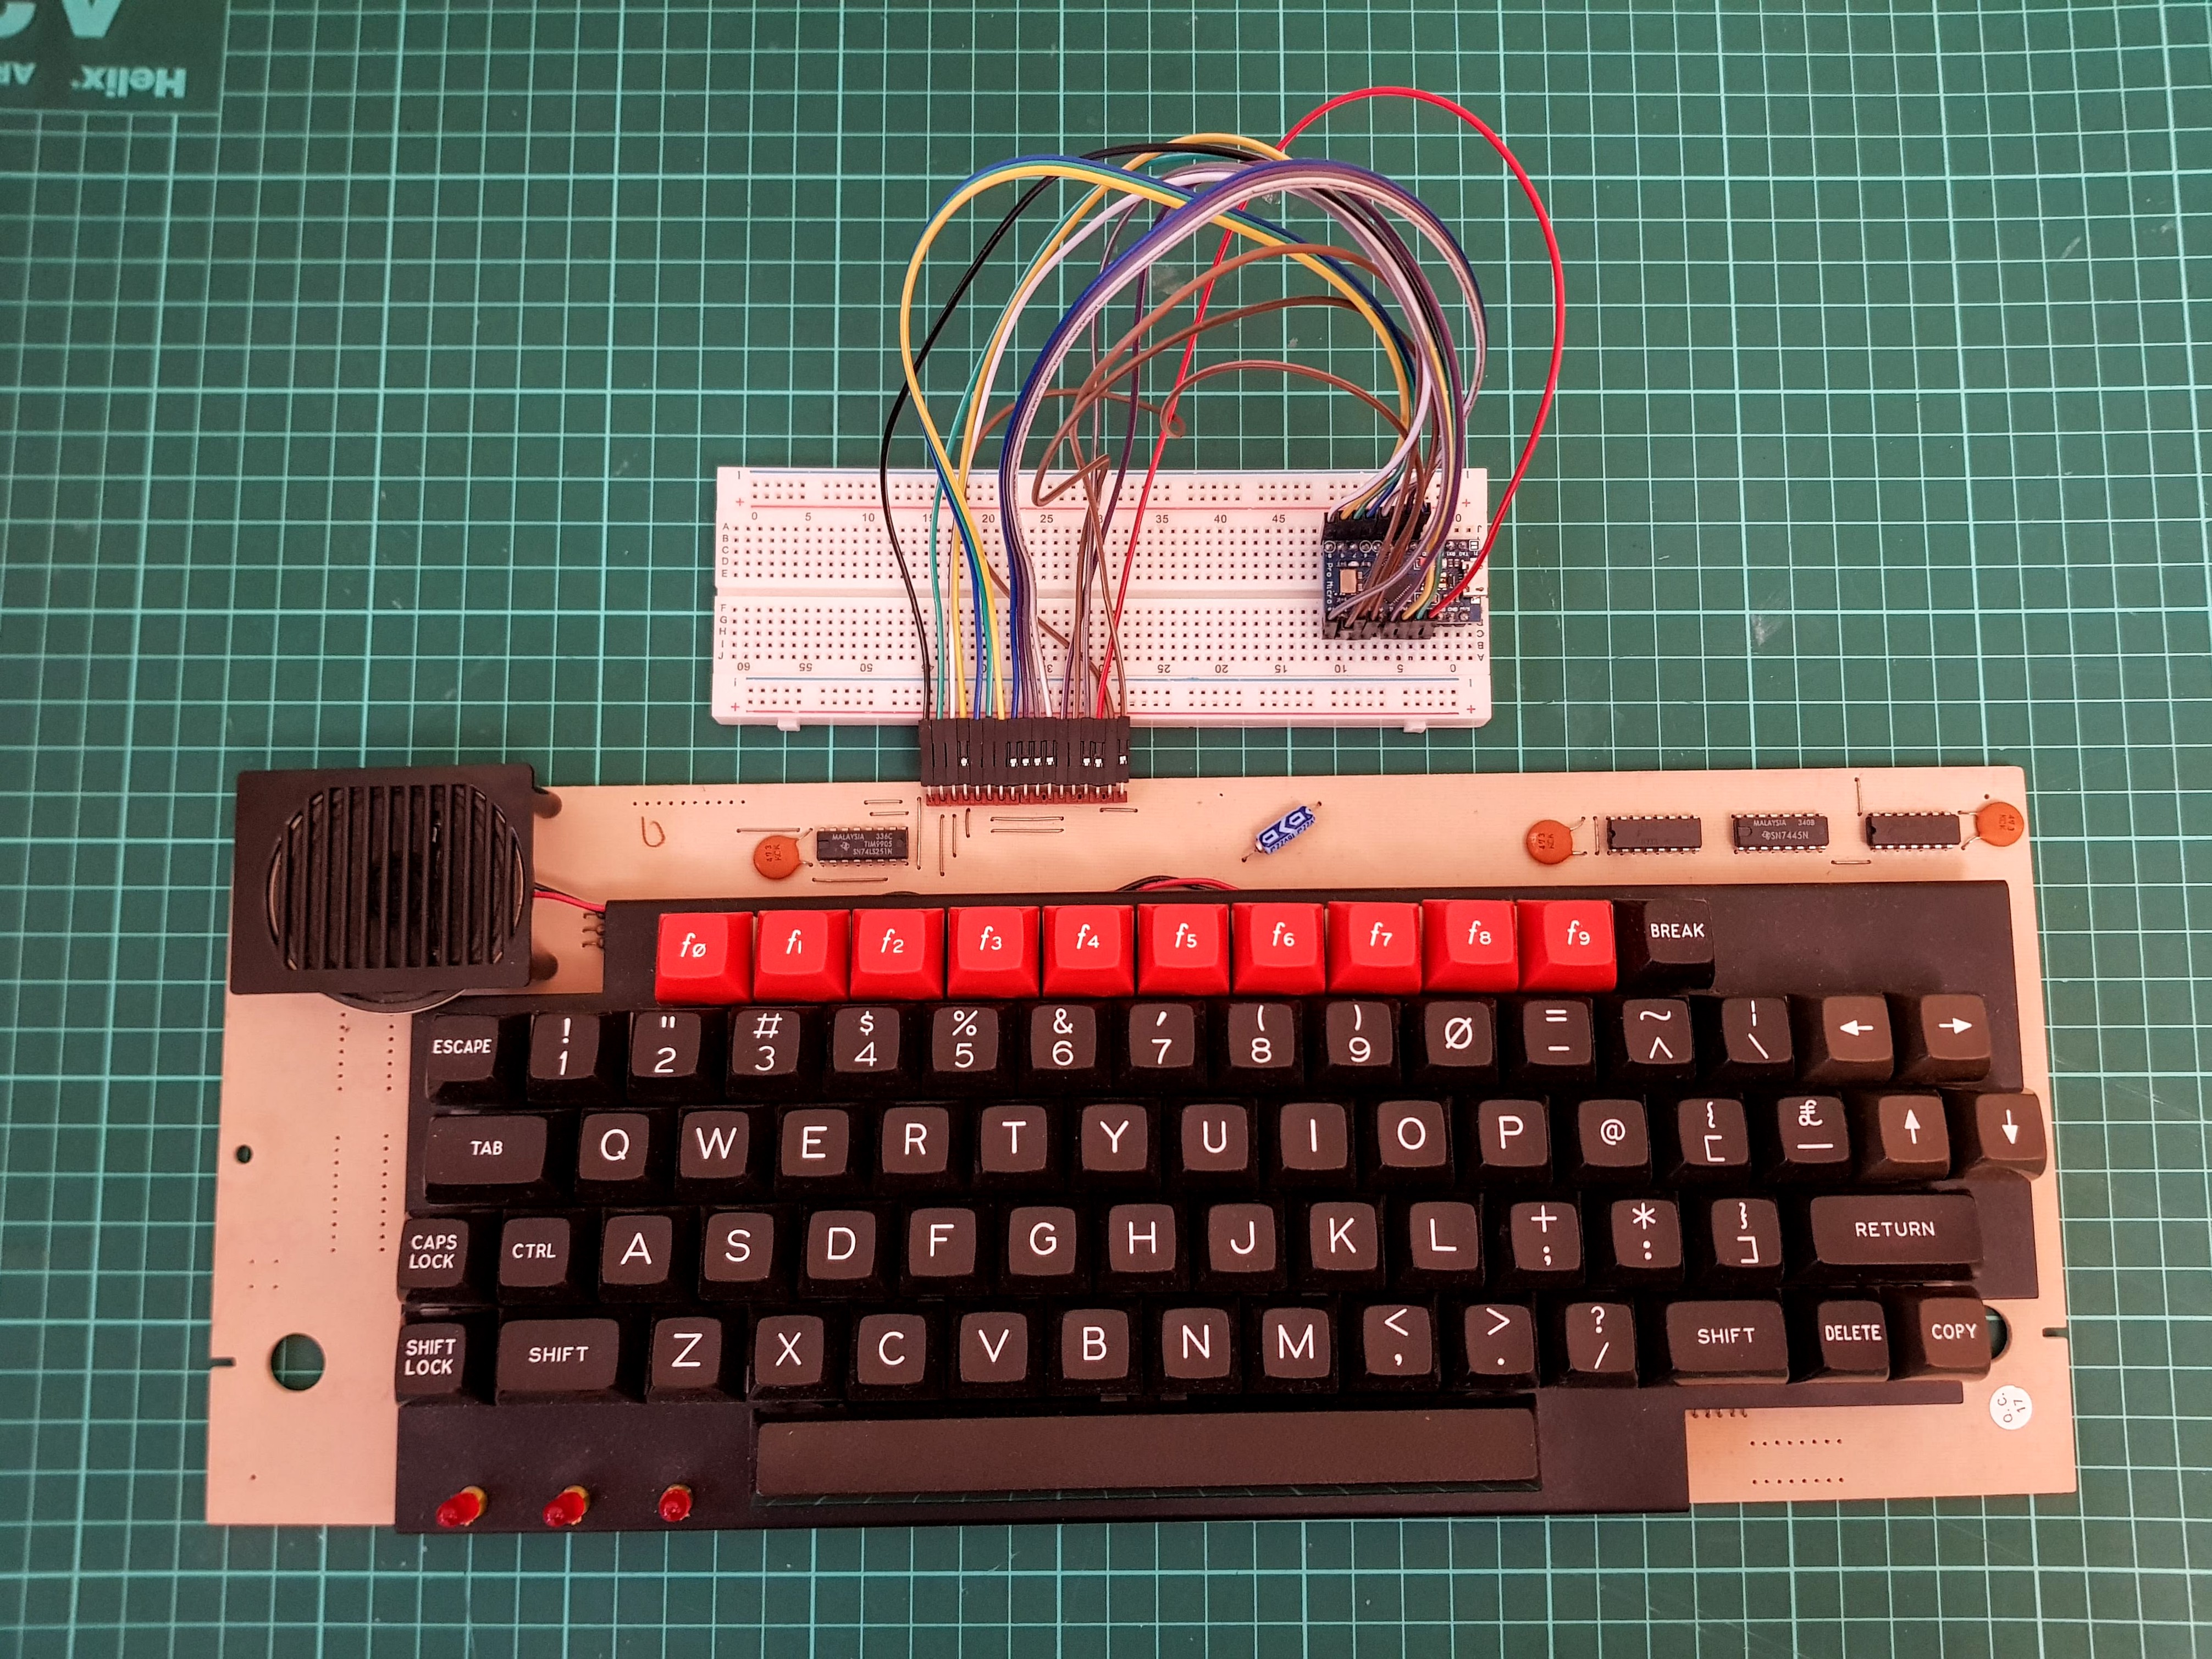 BBC Micro keyboard